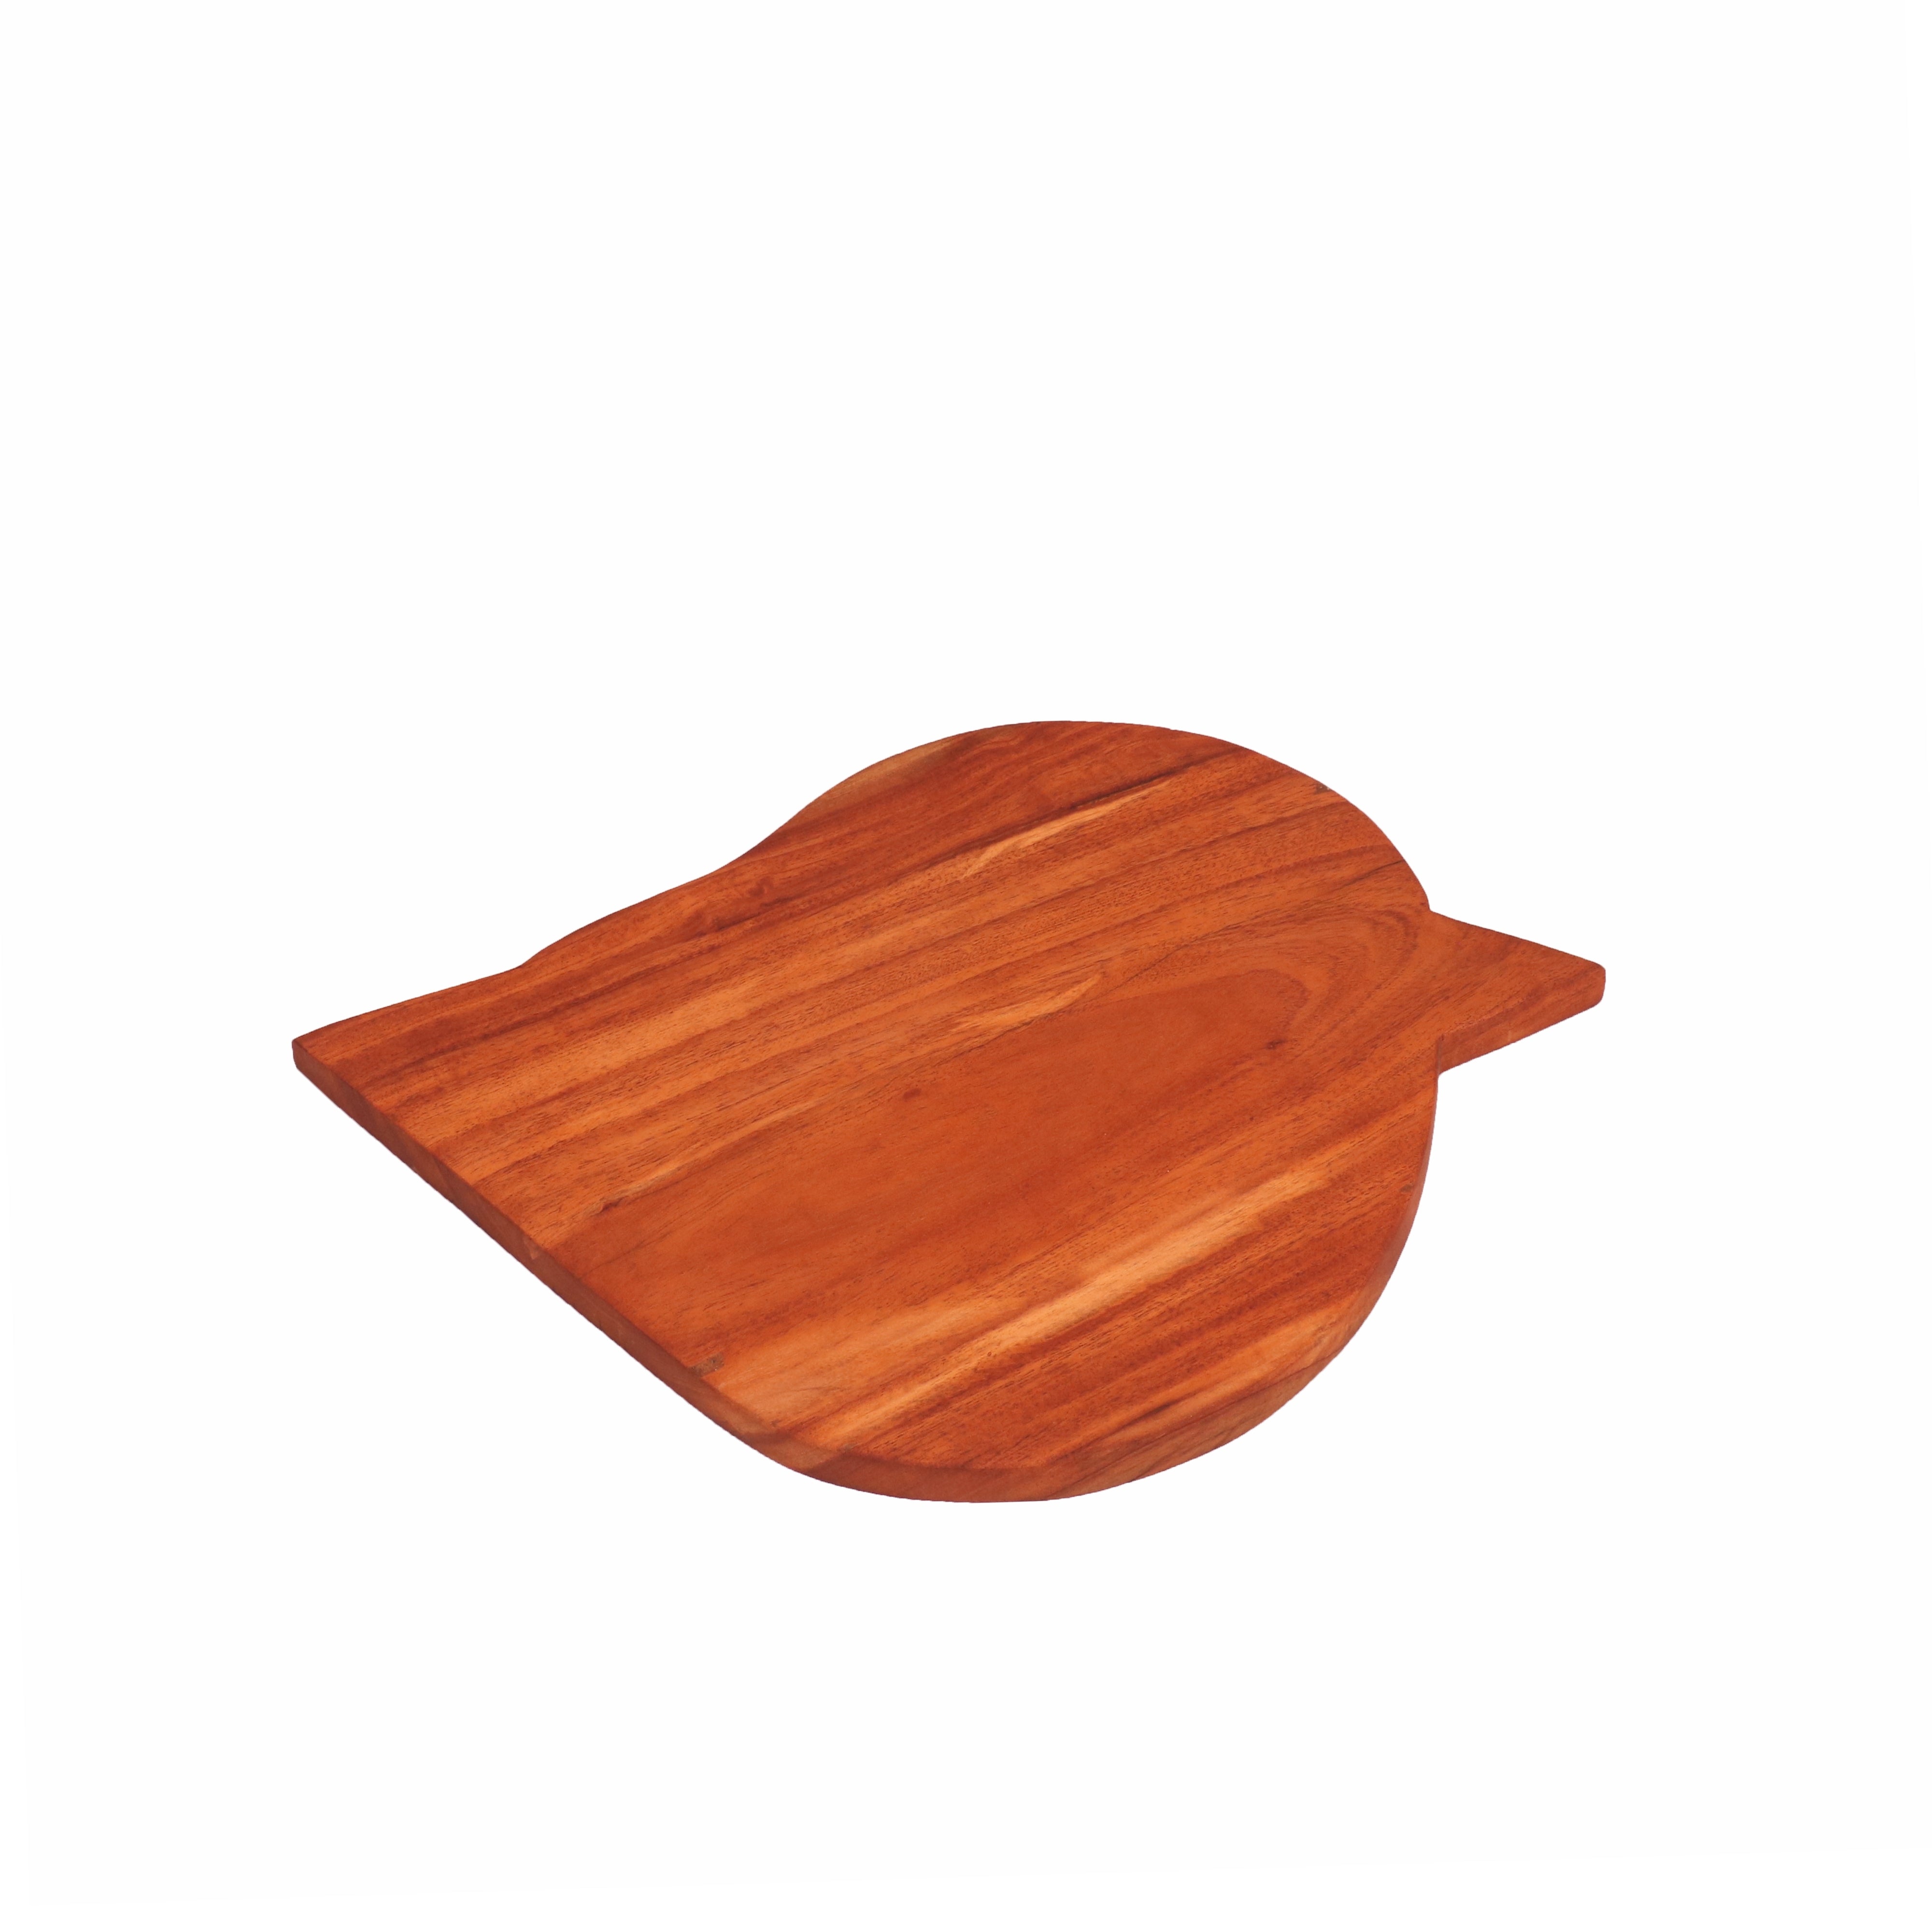 Leaf Shaped Wooden Board Cutting Board